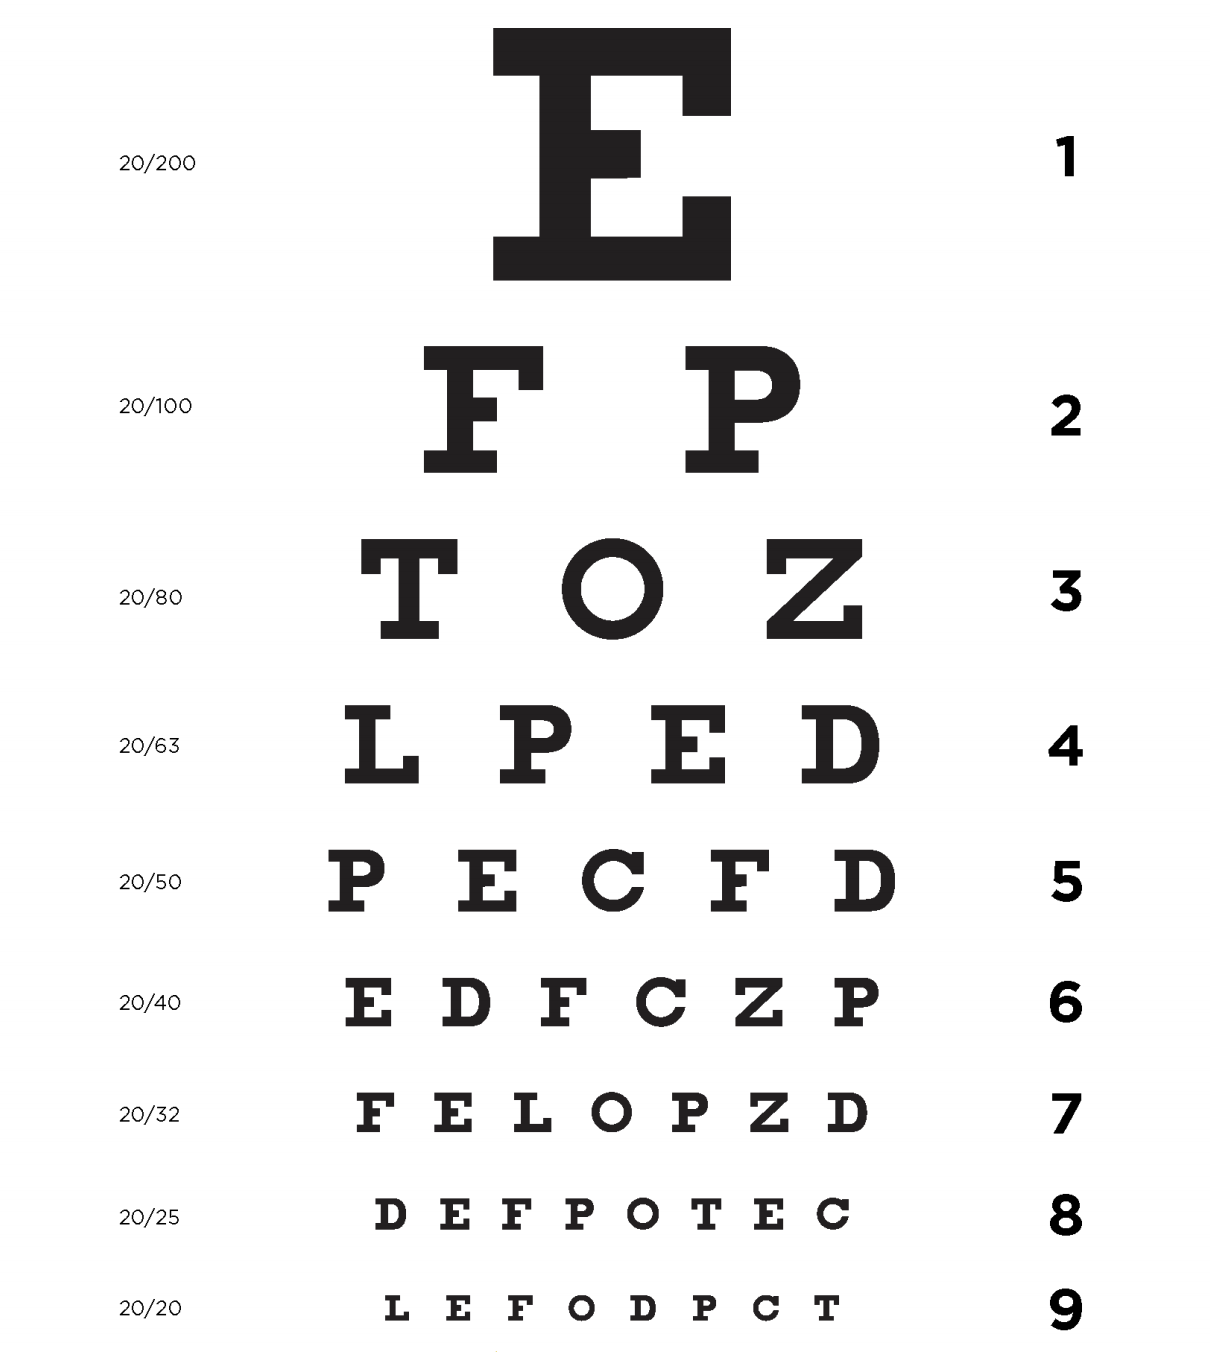 Frcolor Chart Eye Test Vision Amsler Grid Snellen Exam Visual